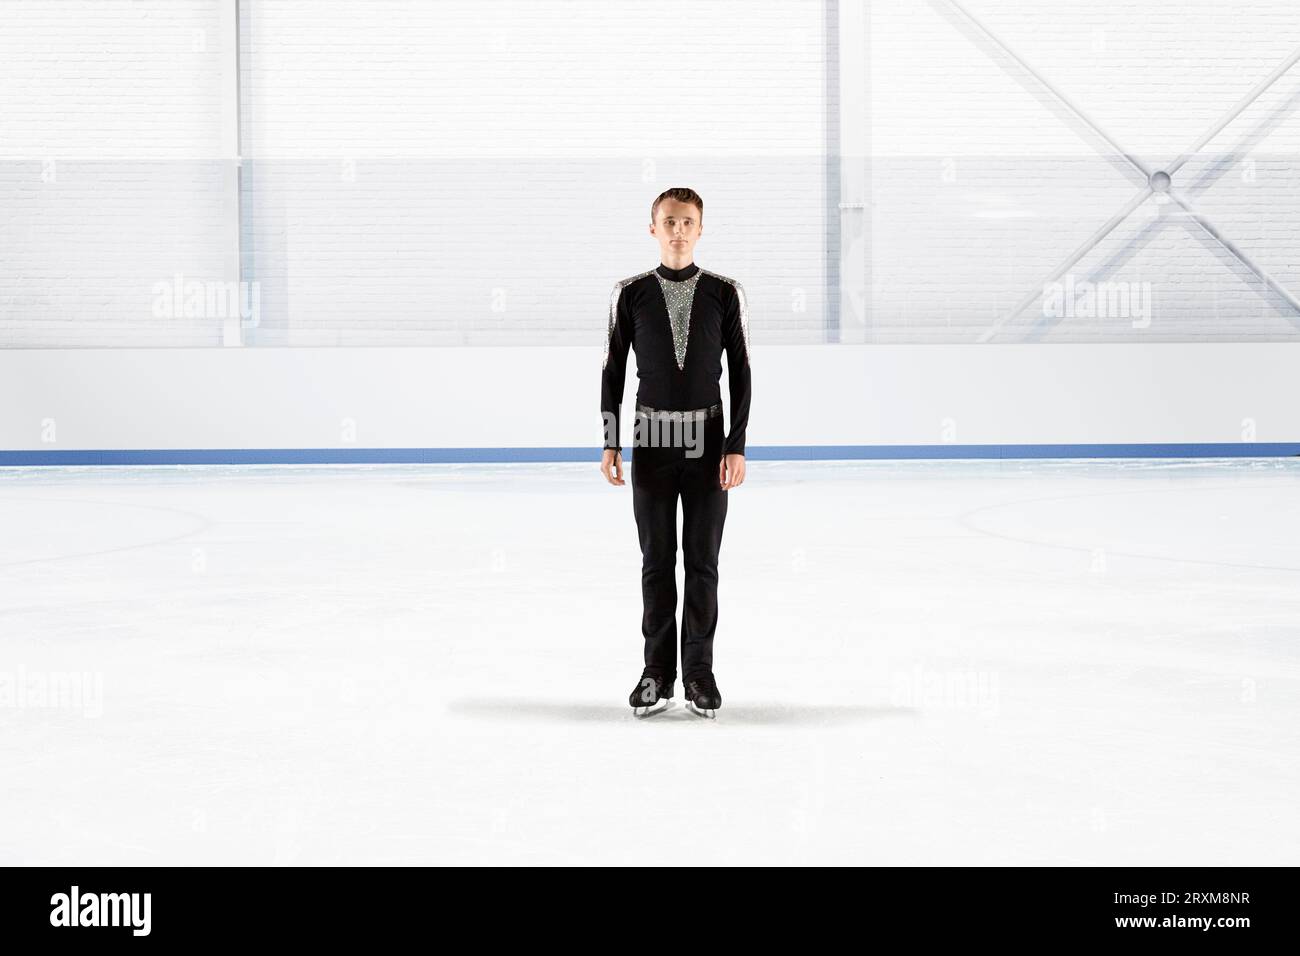 Männliche Figur Skater in Uniform im Eisstadion Stockfoto